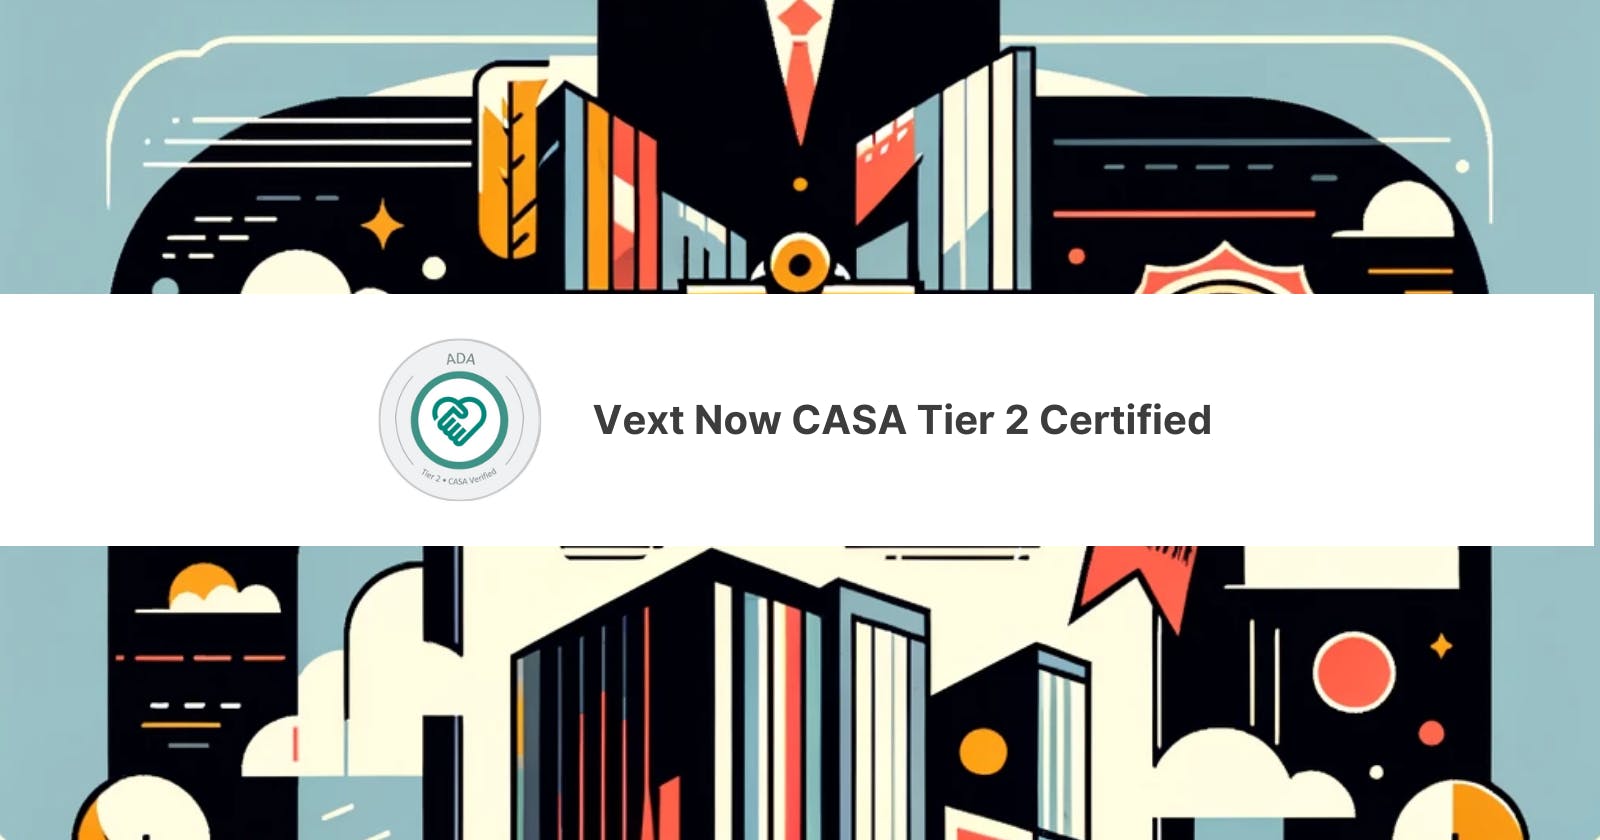 Vext Now CASA Tier 2 Certified!